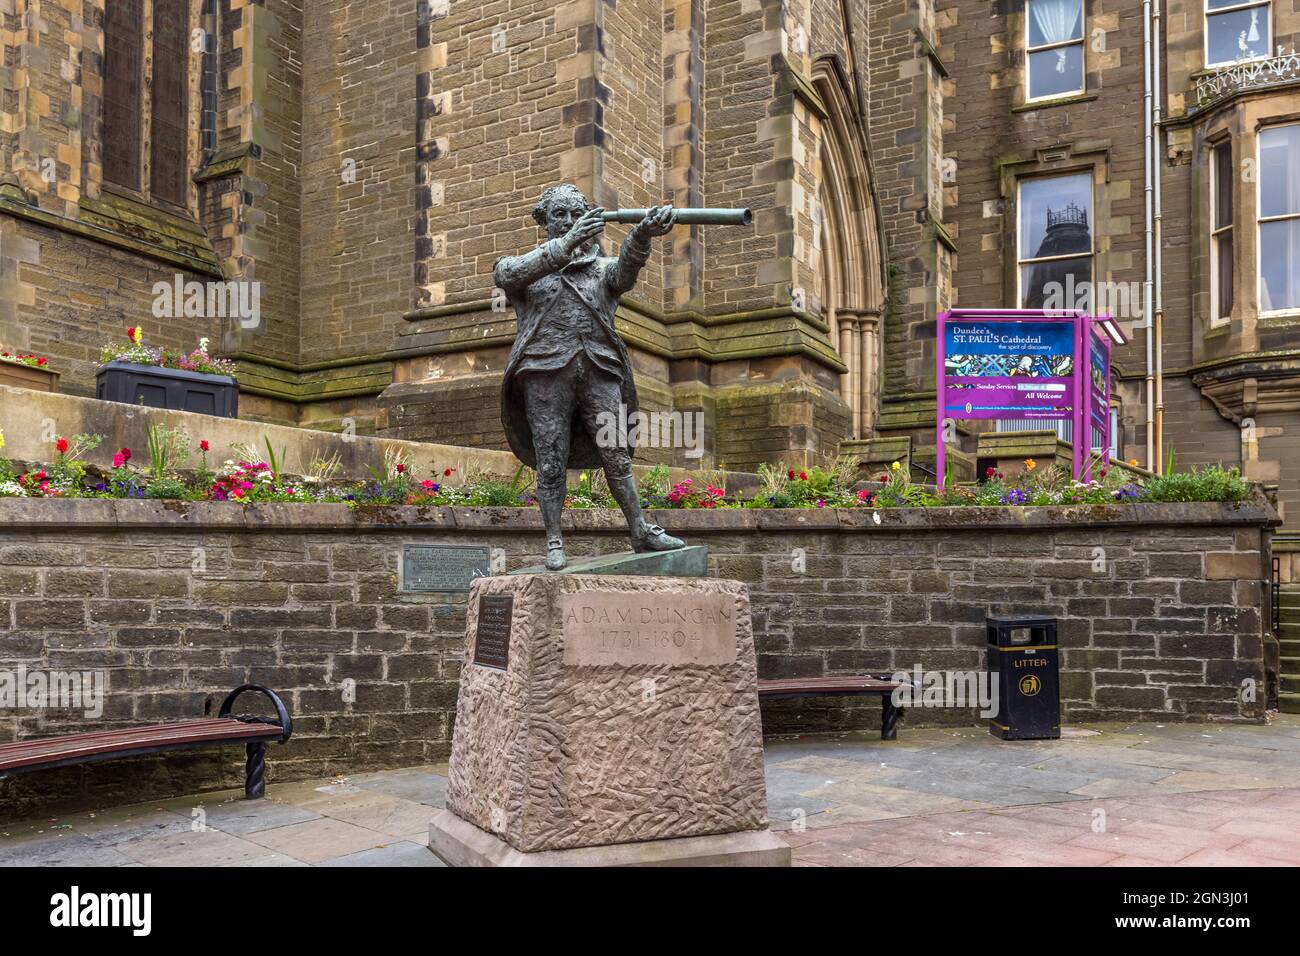 Statua dell'ammiraglio Adam Duncan fuori dalla cattedrale di St Paul a Dundee, Scozia, Regno Unito Foto Stock